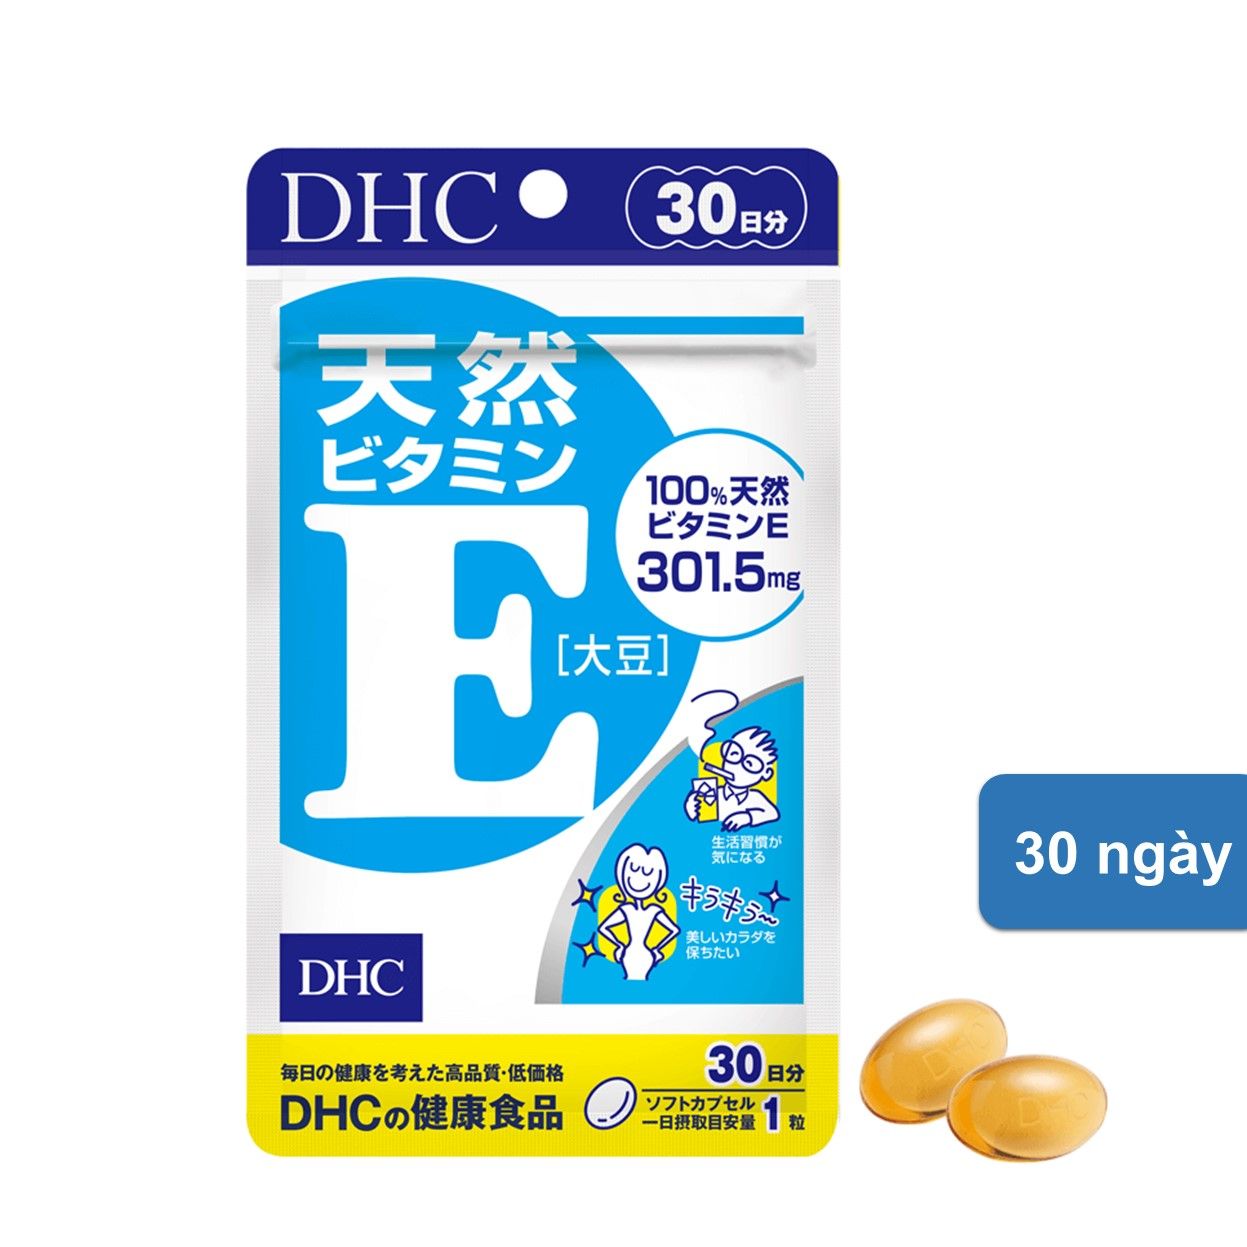  Viên Uống DHC Vitamin E 30 ngày 